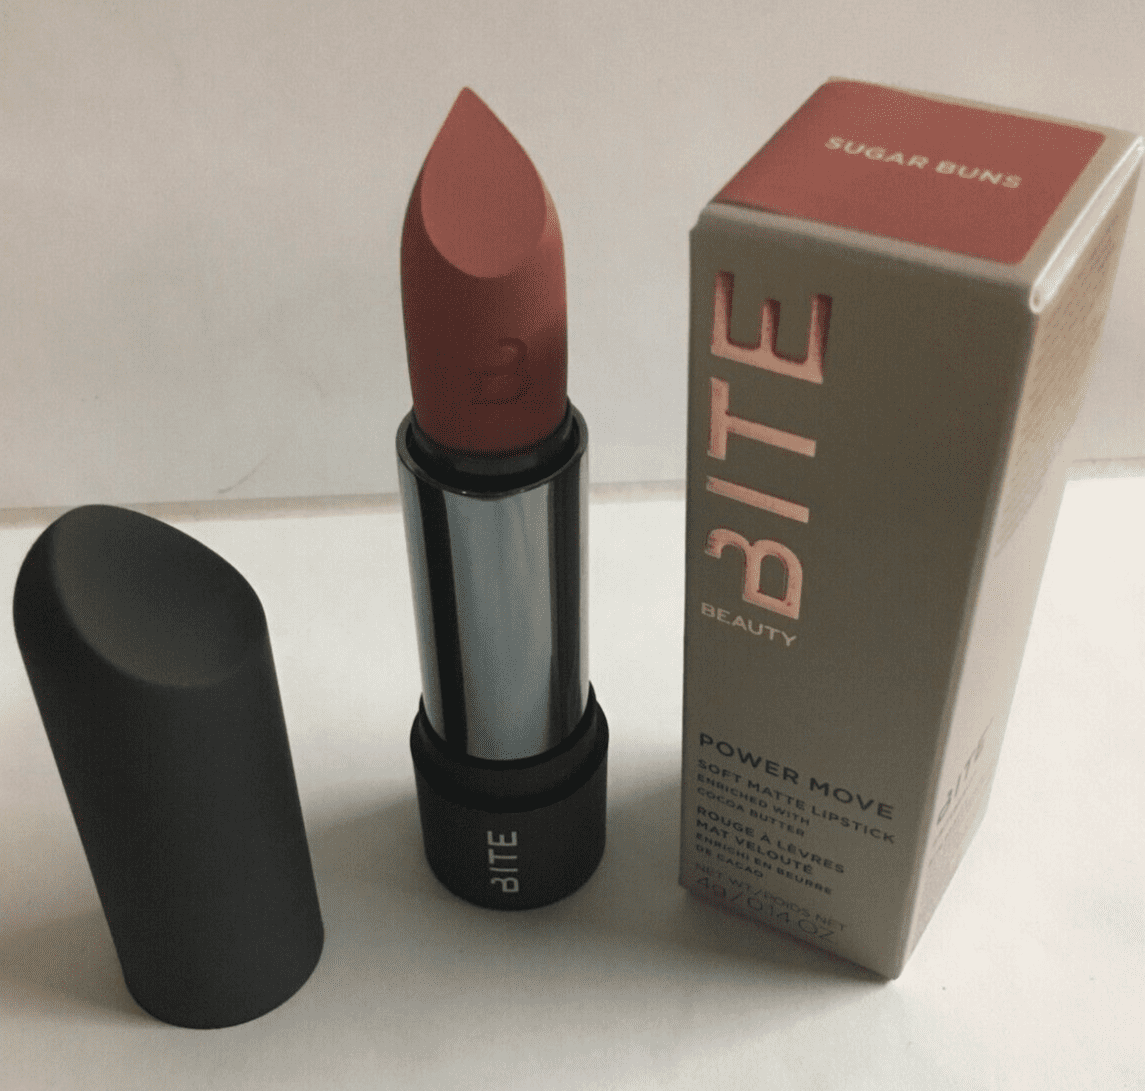 Dårligt humør Stereotype vægt Bite Beauty Power Move Matte Lipstick SUGAR BUNS 0.14 oz Full Size. -  Walmart.com